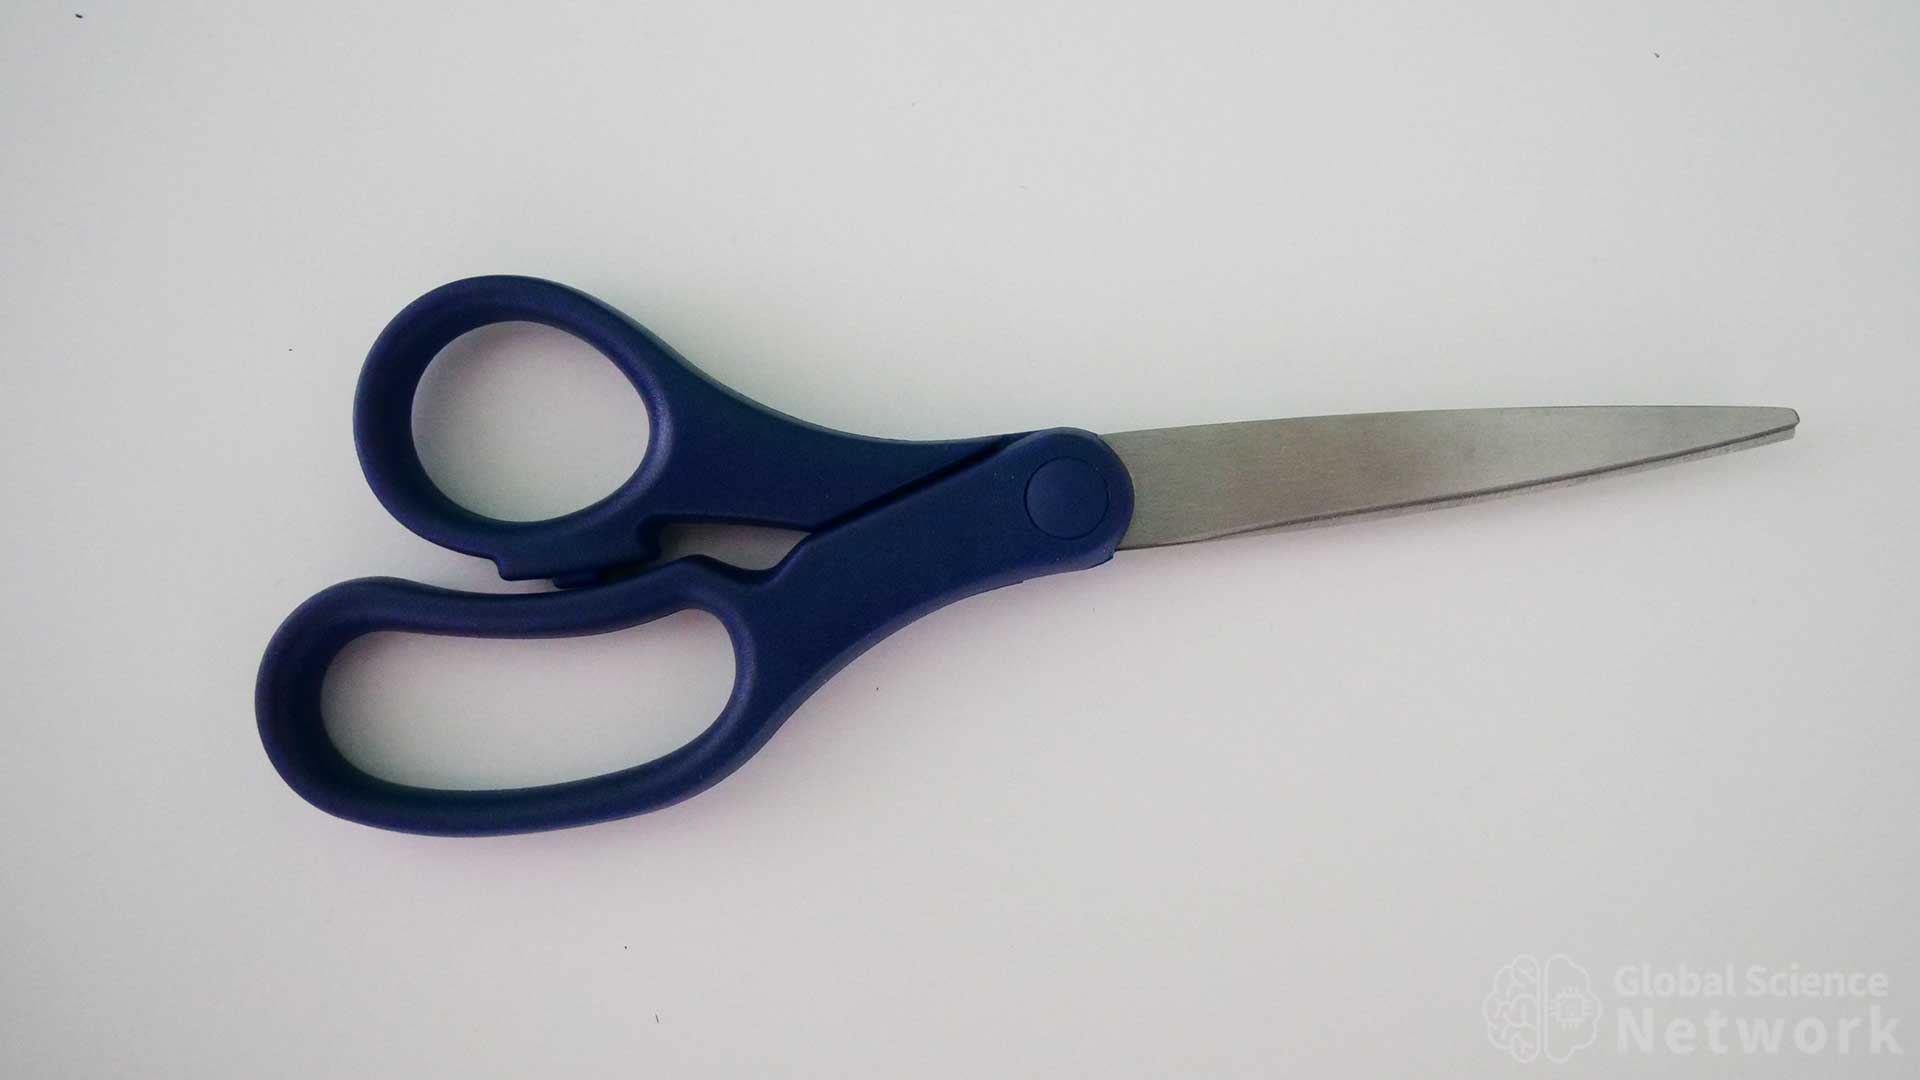 scissors to cut wire